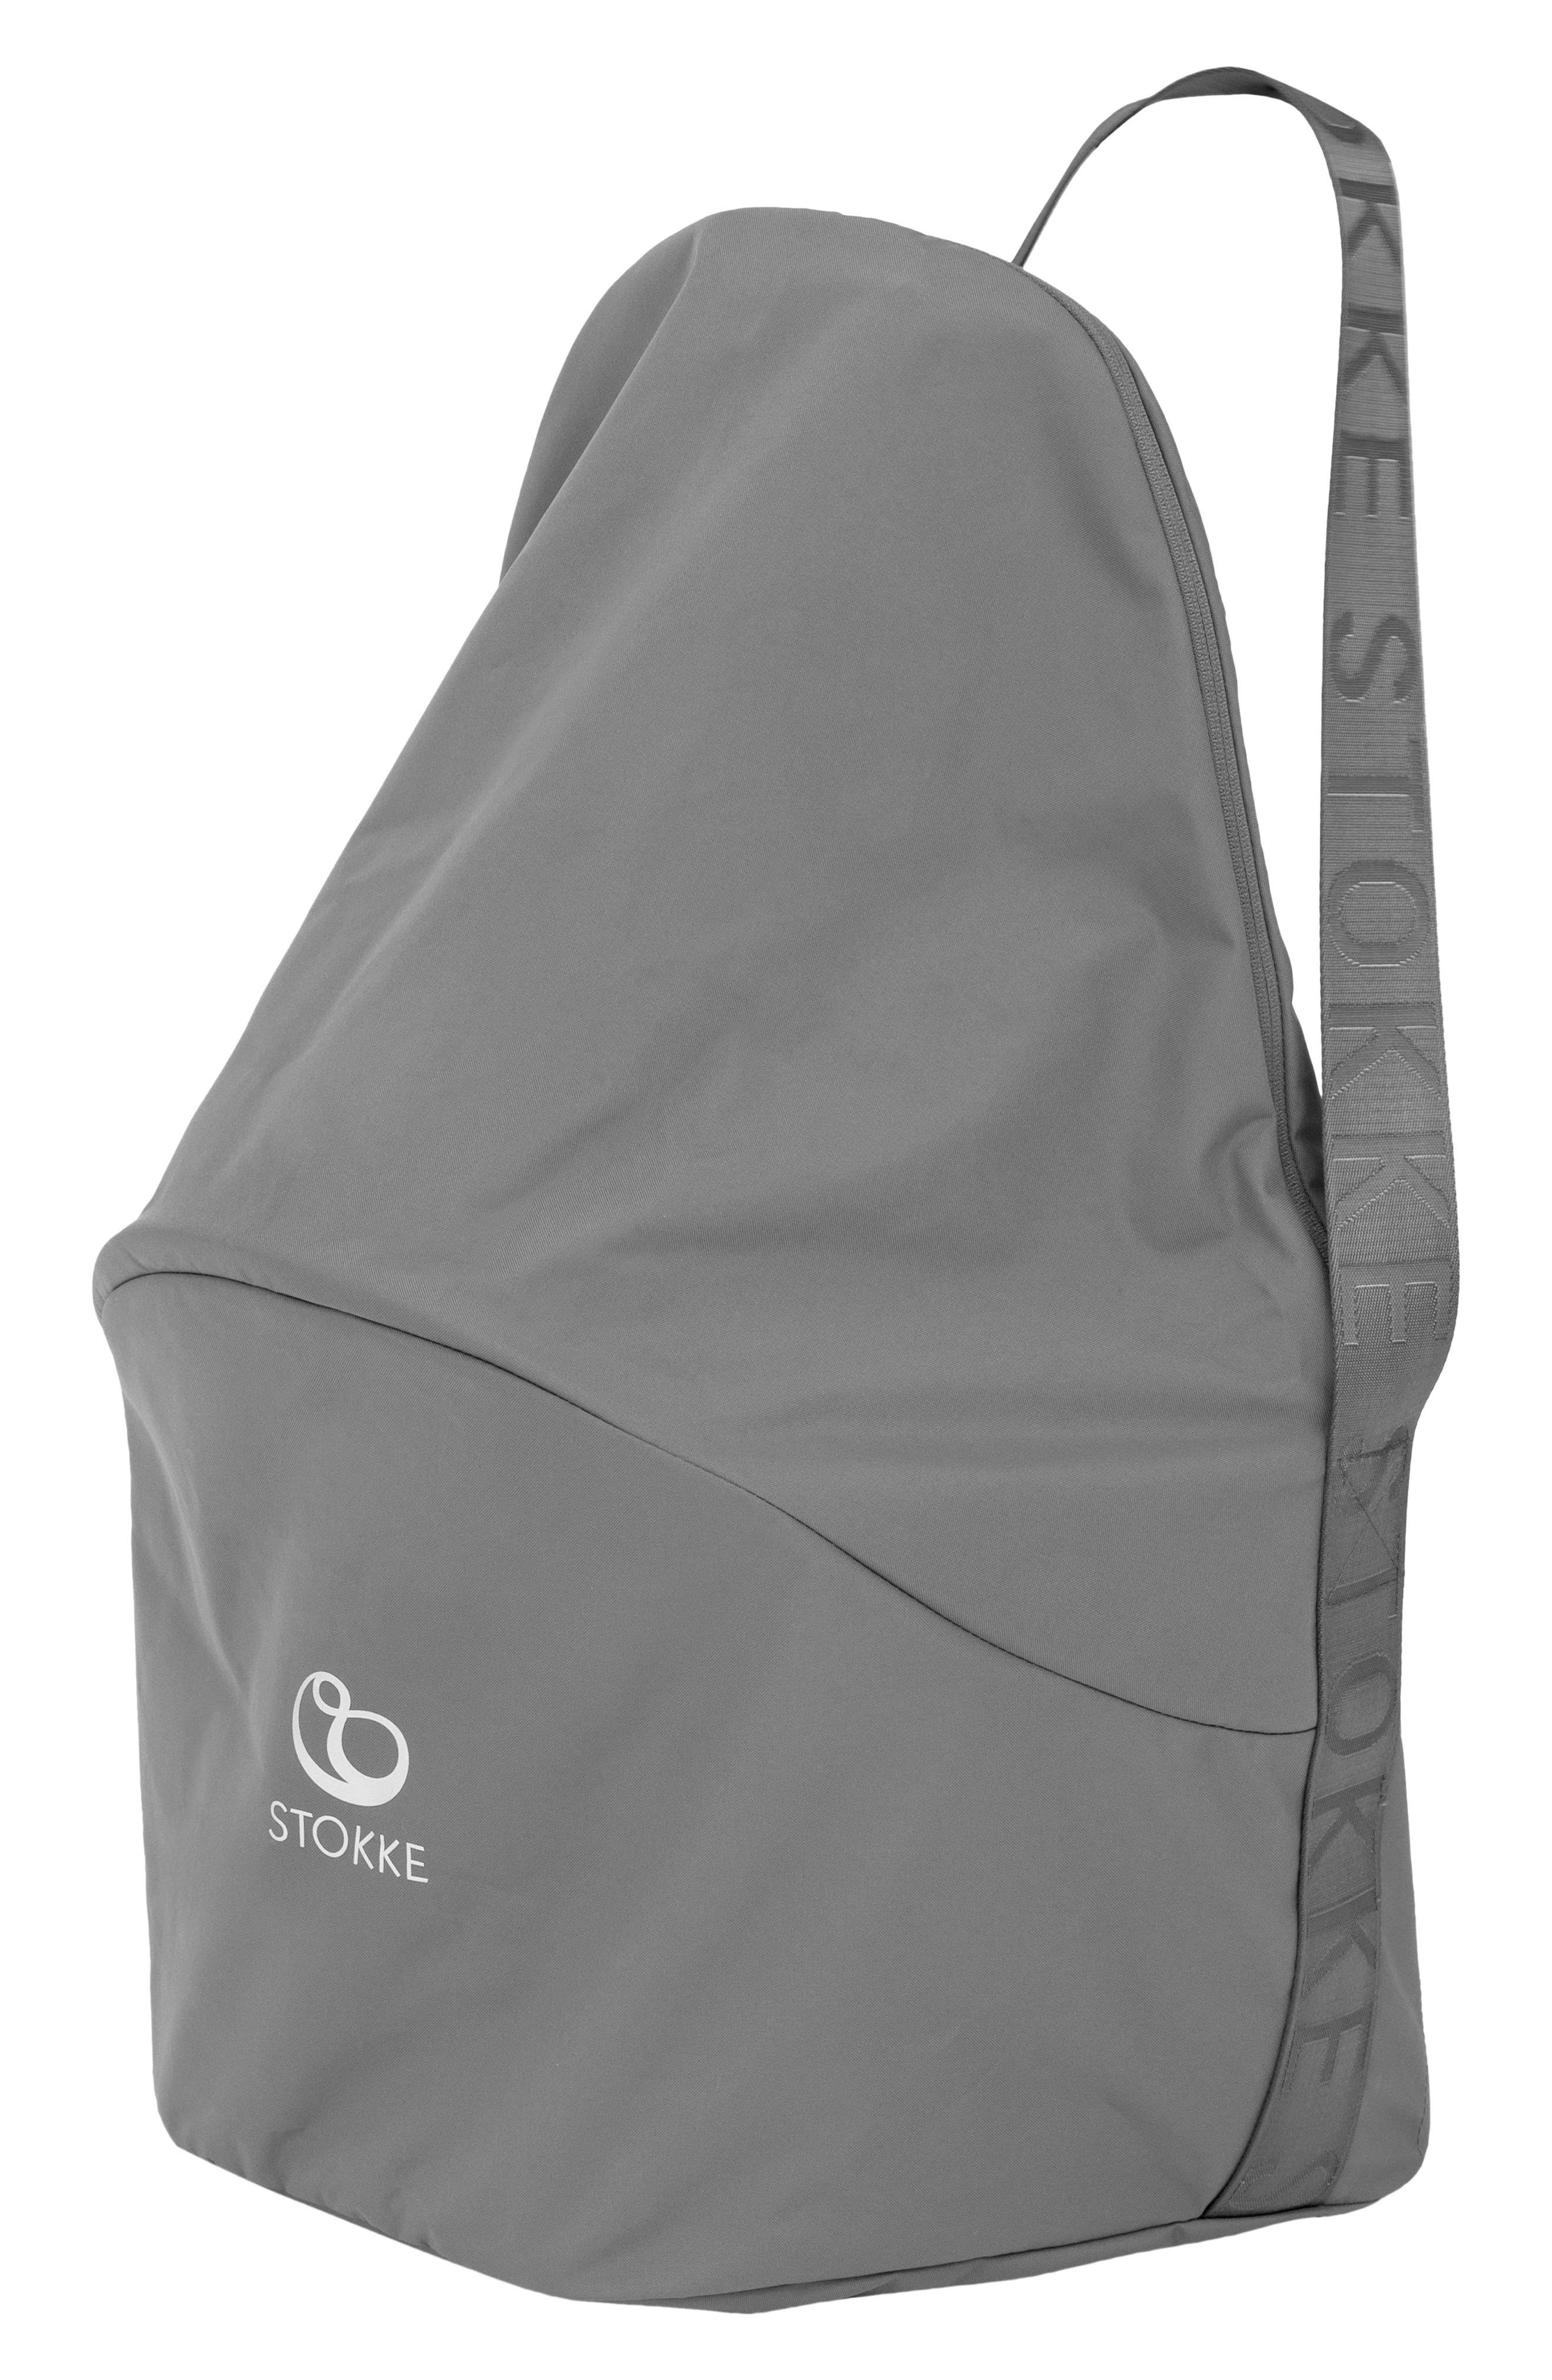 Stokke Clikk High Chair Travel Bag - Grey